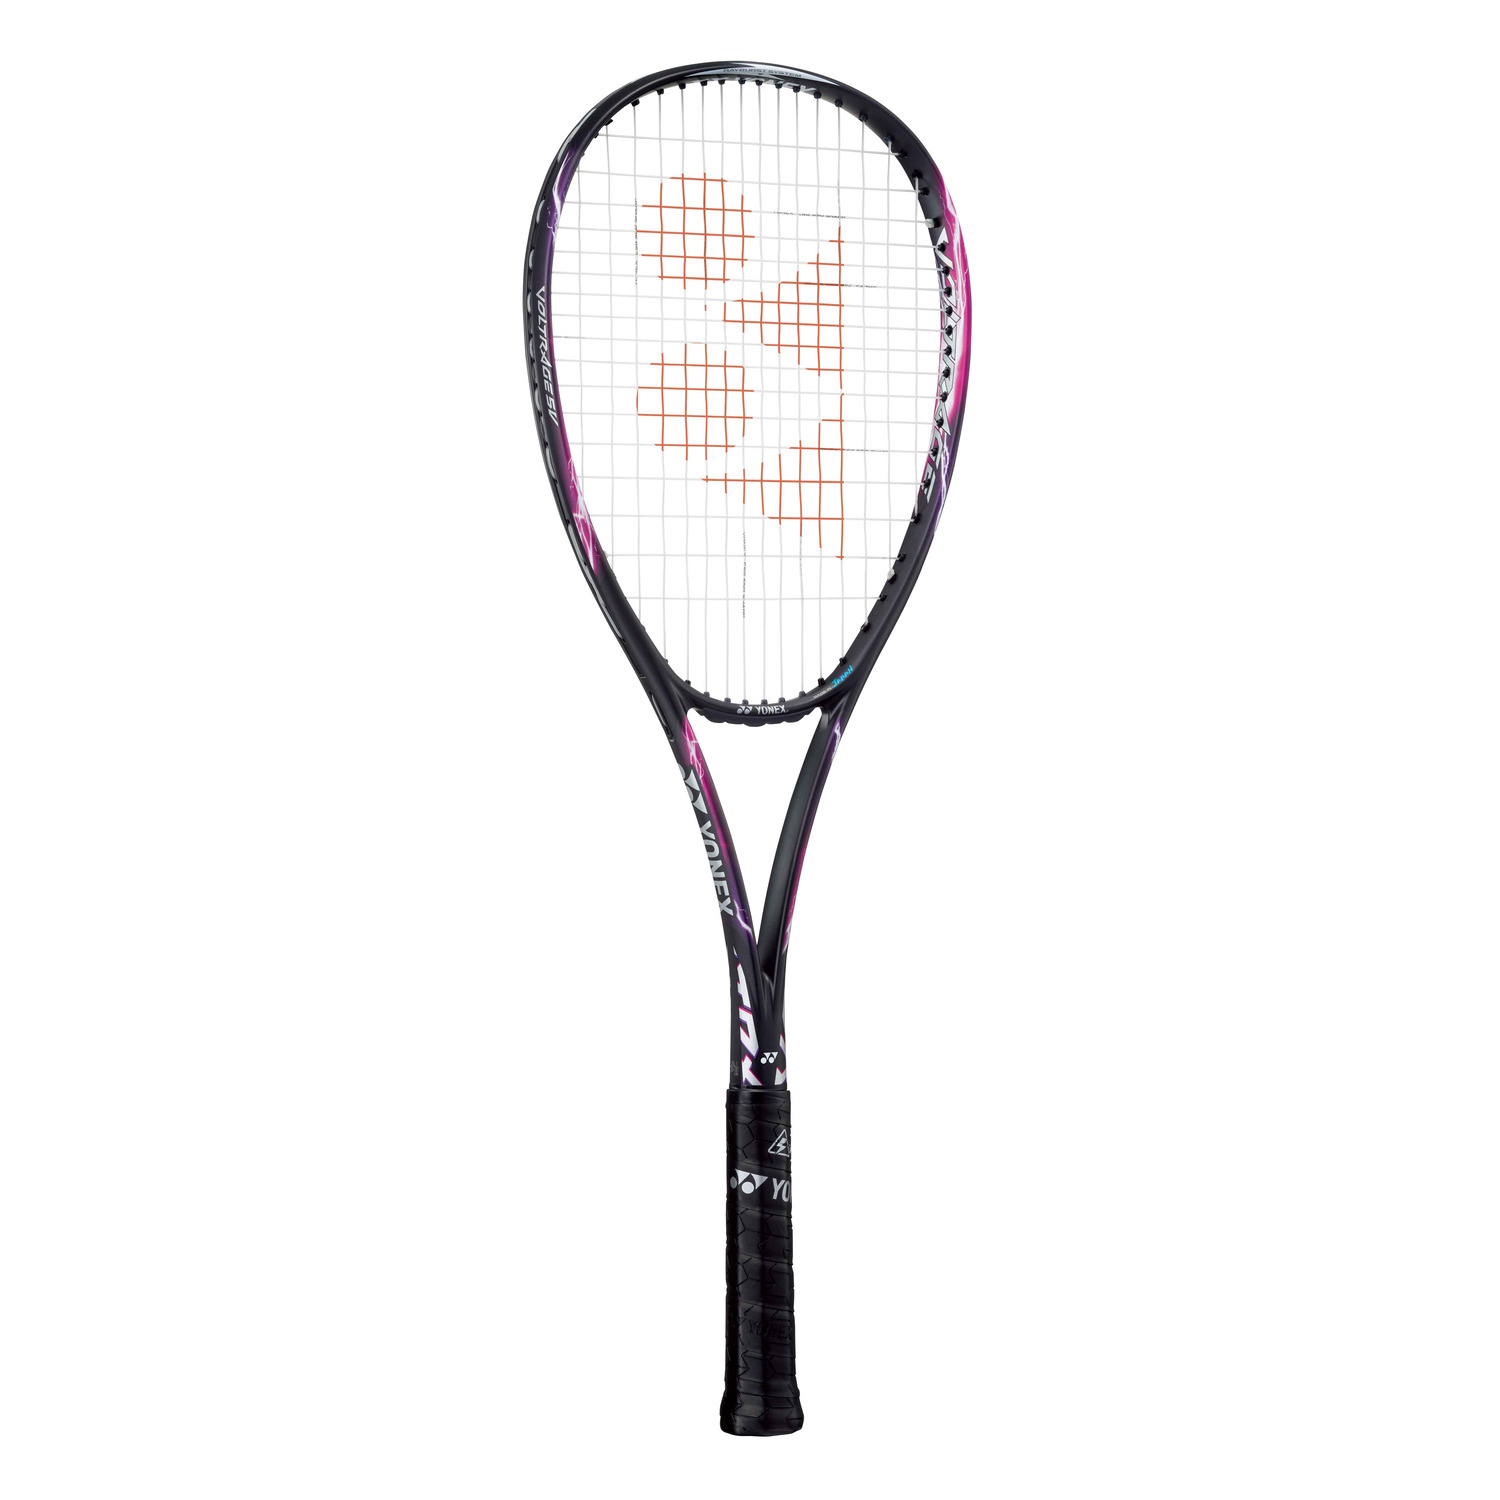 新作人気 Yonex ヨネックス ソフトテニス ラケット ボルトレイジ5v フレームのみ Vr5v パ プル ピンク 硬式 サイズ Ul1 Kisa Mit Edu